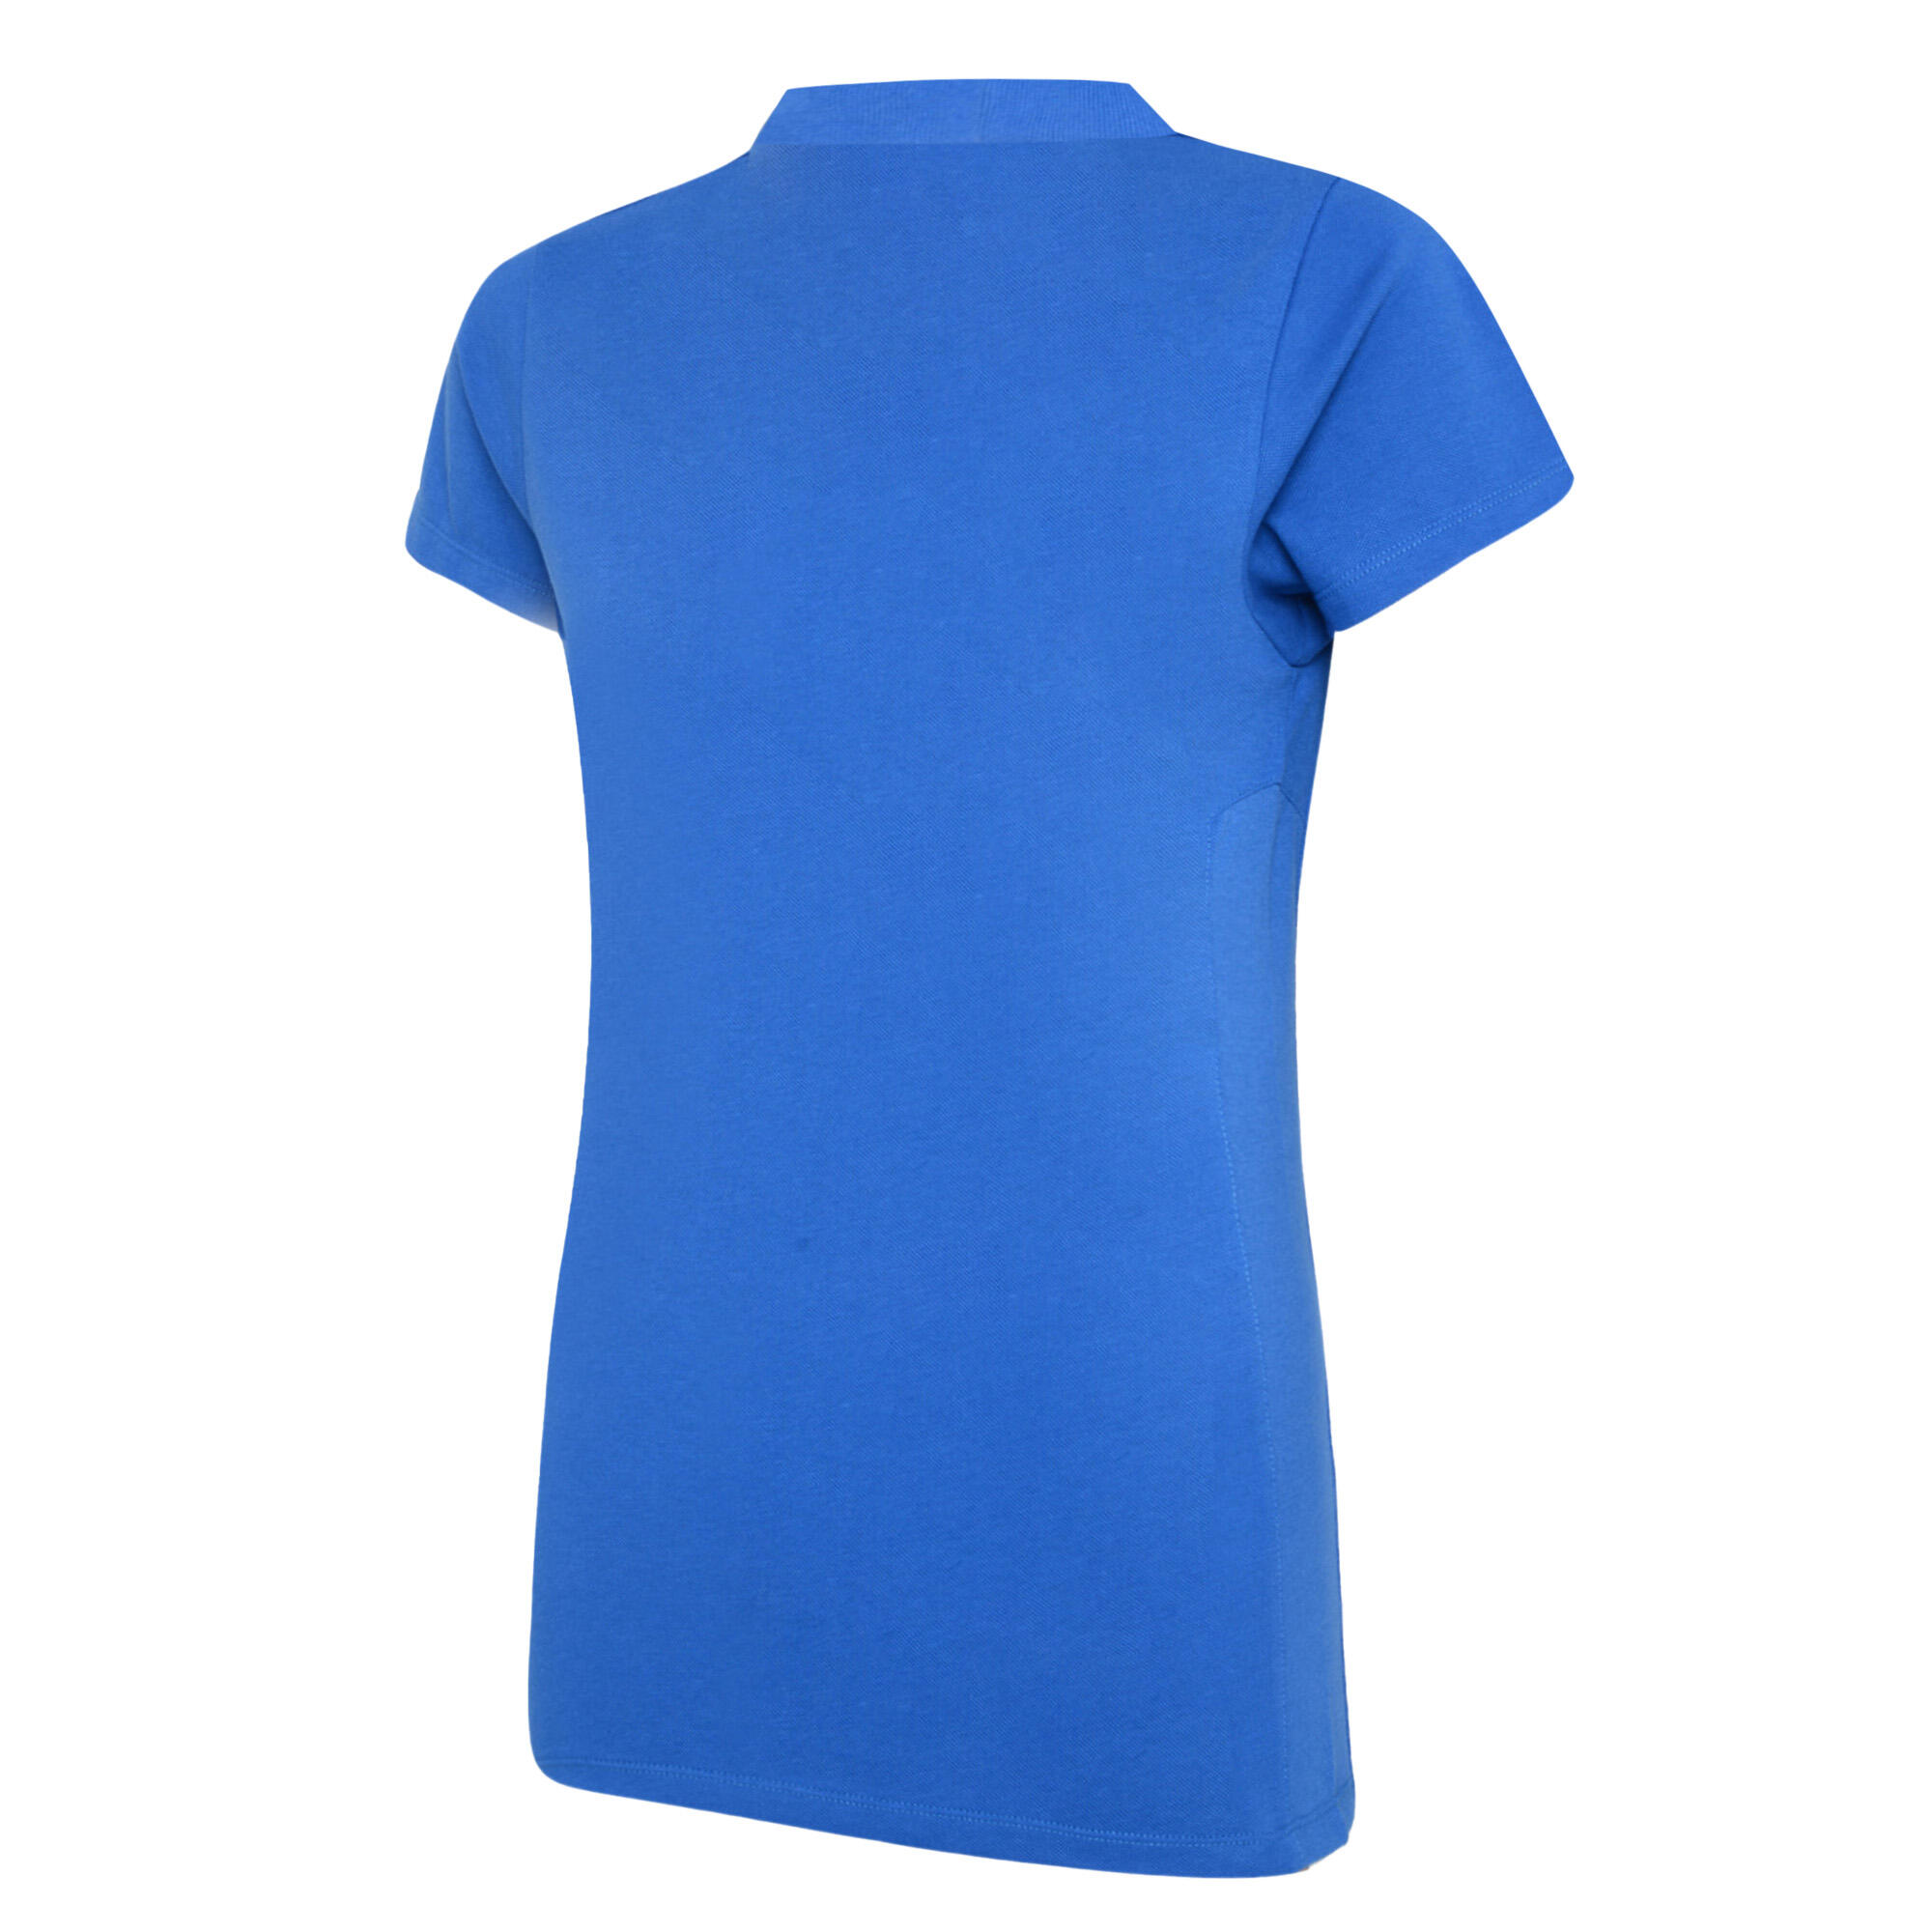 Womens/Ladies Club Essential Polo Shirt (Royal Blue/White) 2/3